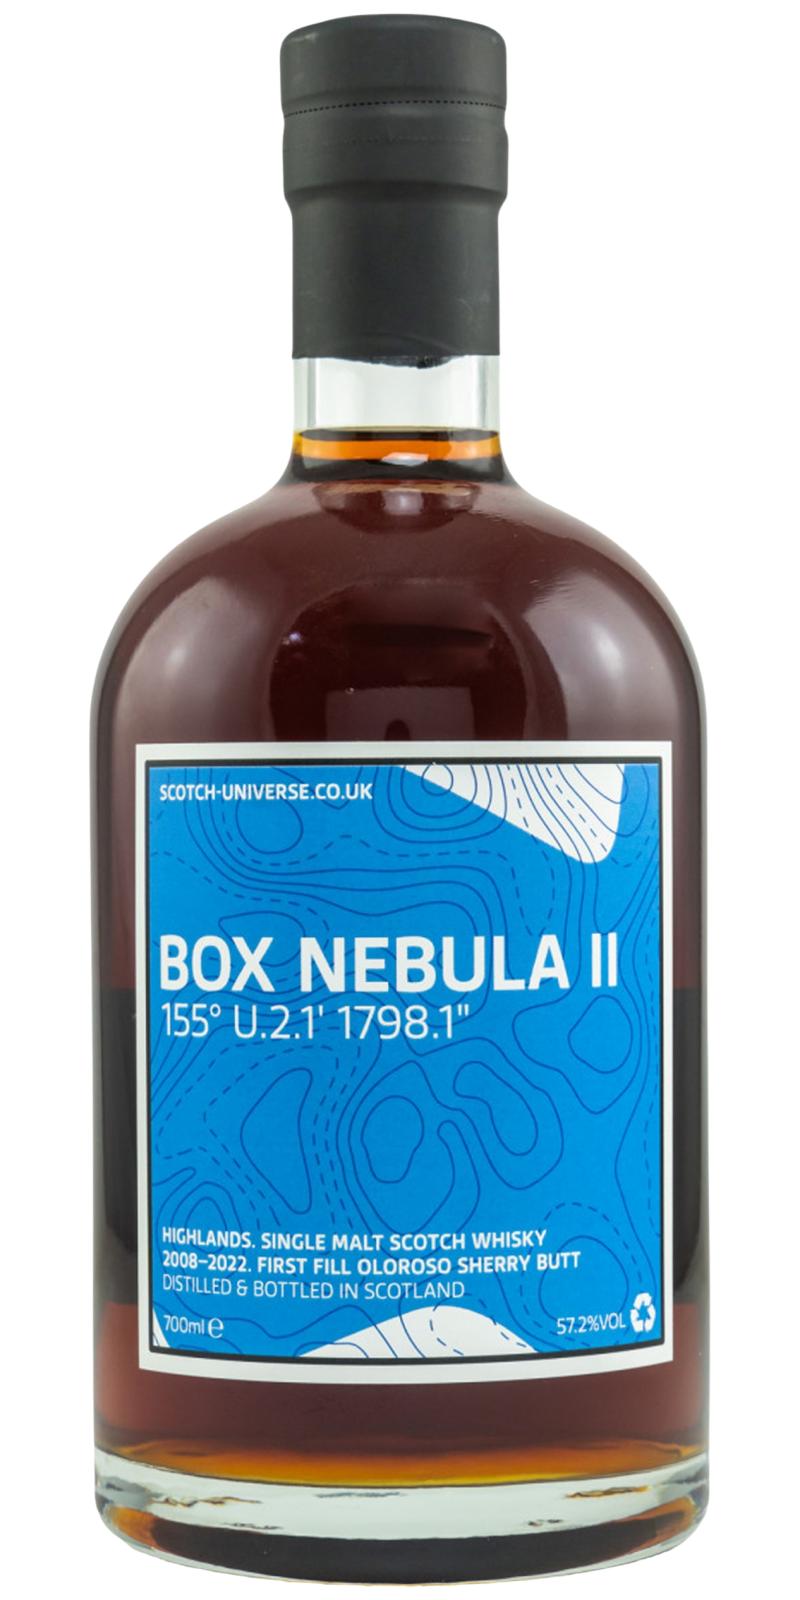 Scotch Universe Box Nebula II - 155° U.2.1' 1798.1''